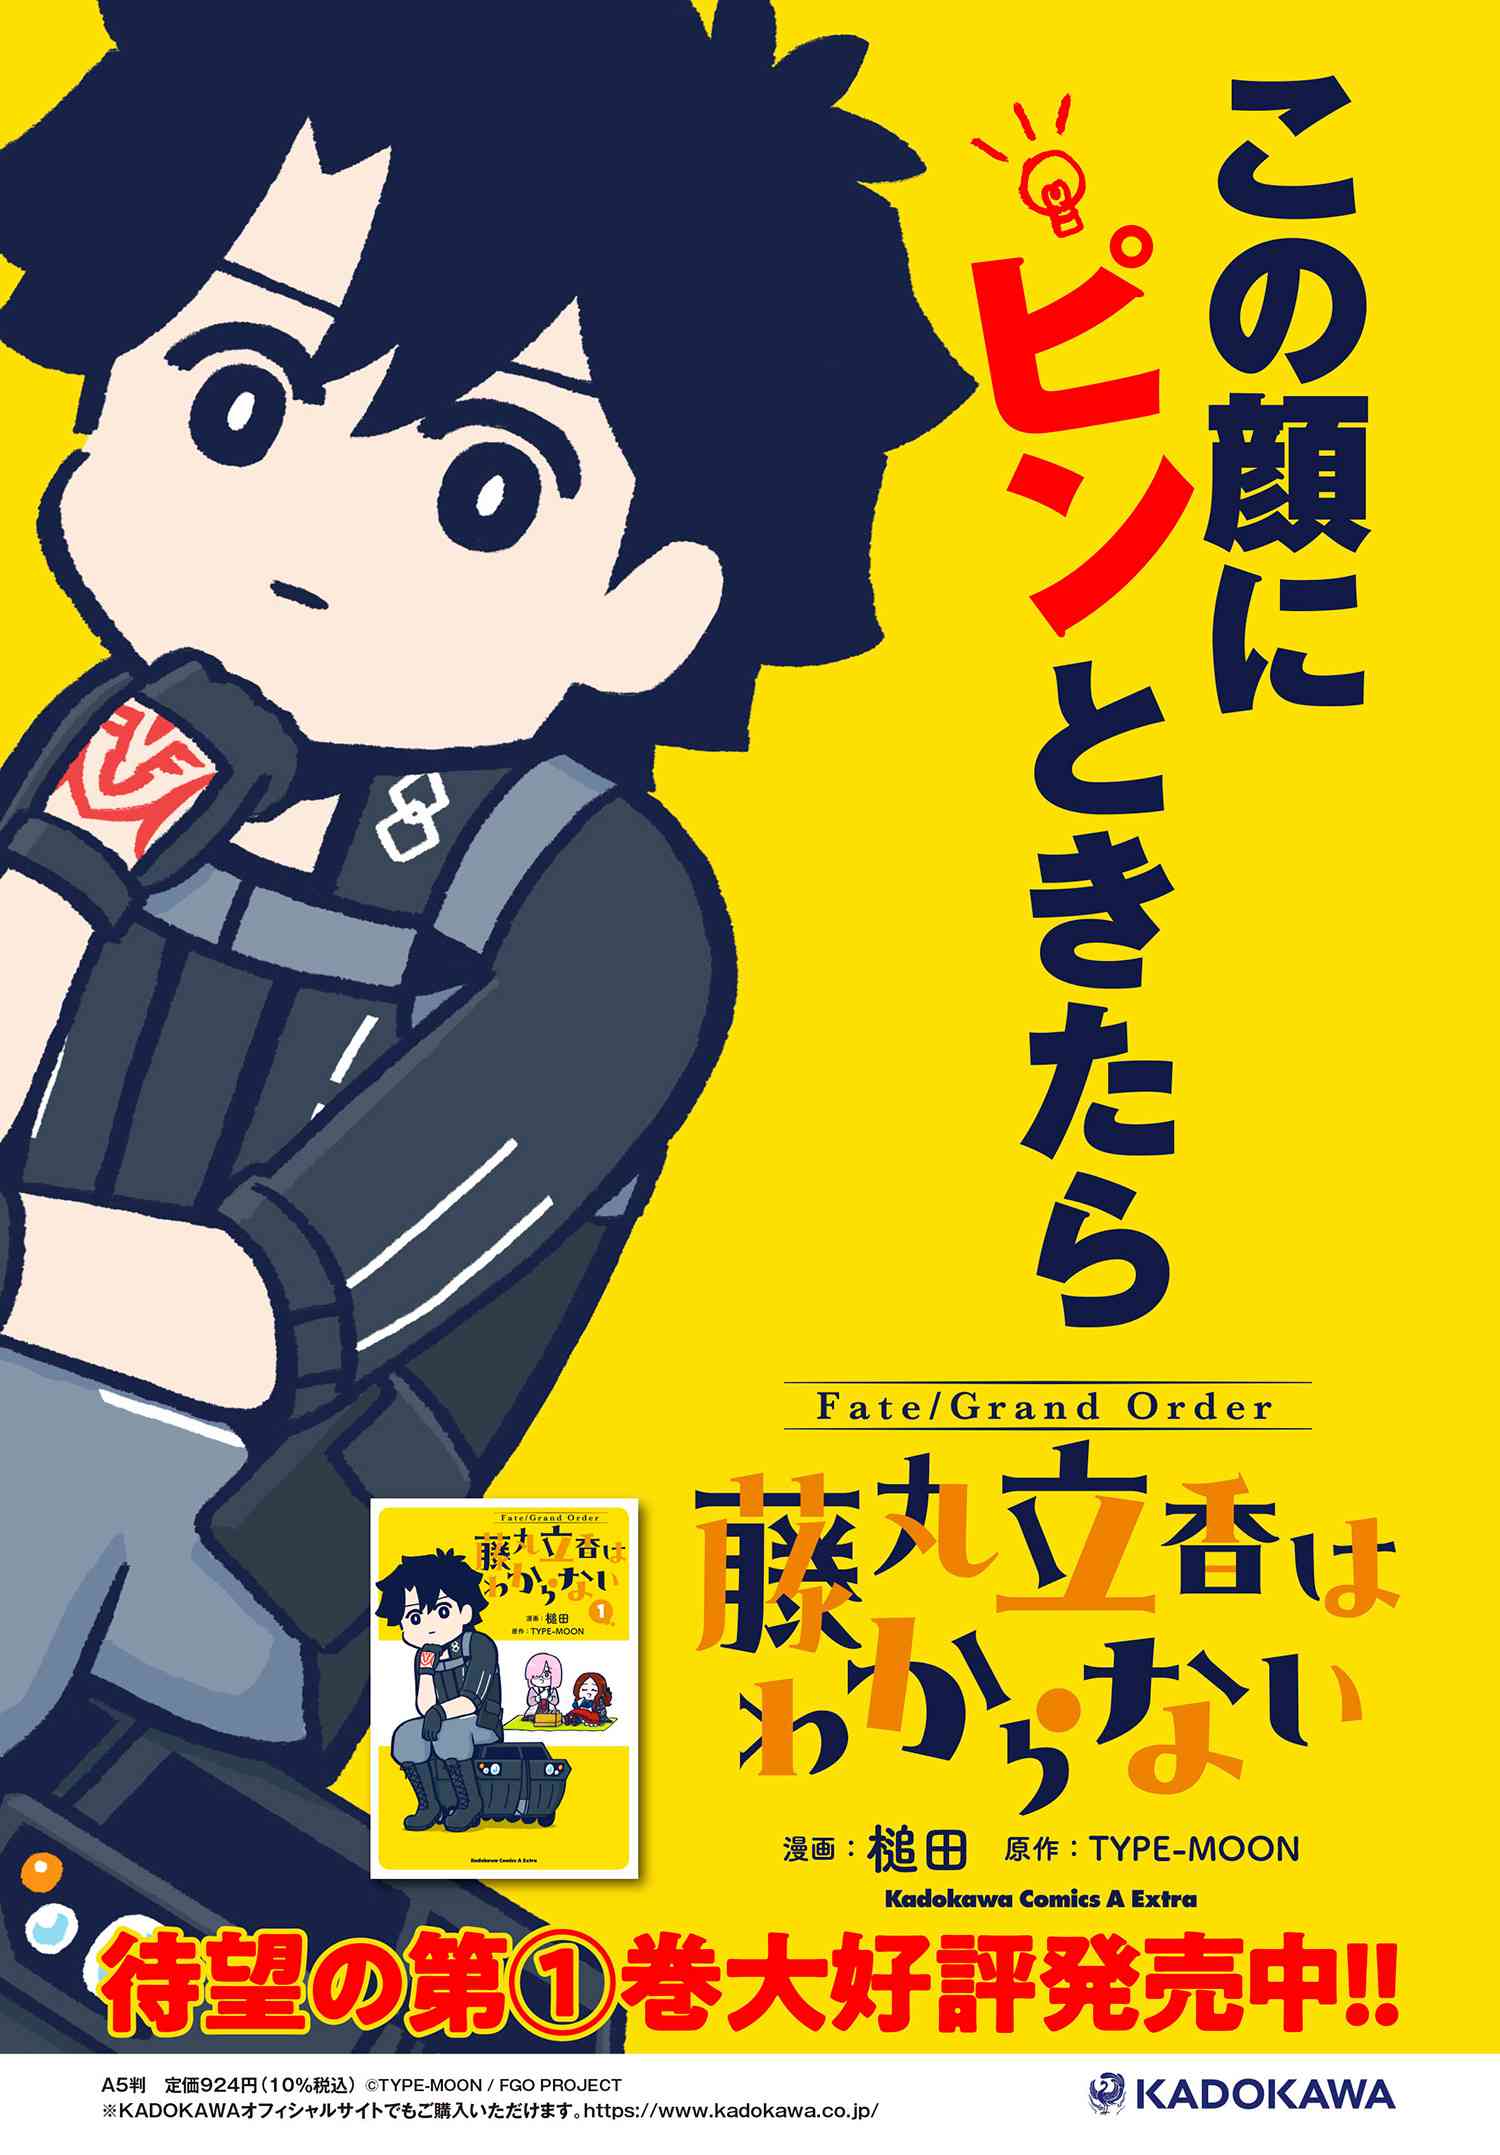 Fate Grand Order 藤丸立香はわからない 第21話 Type Moonコミックエース 無料で漫画が読めるオンラインマガジン